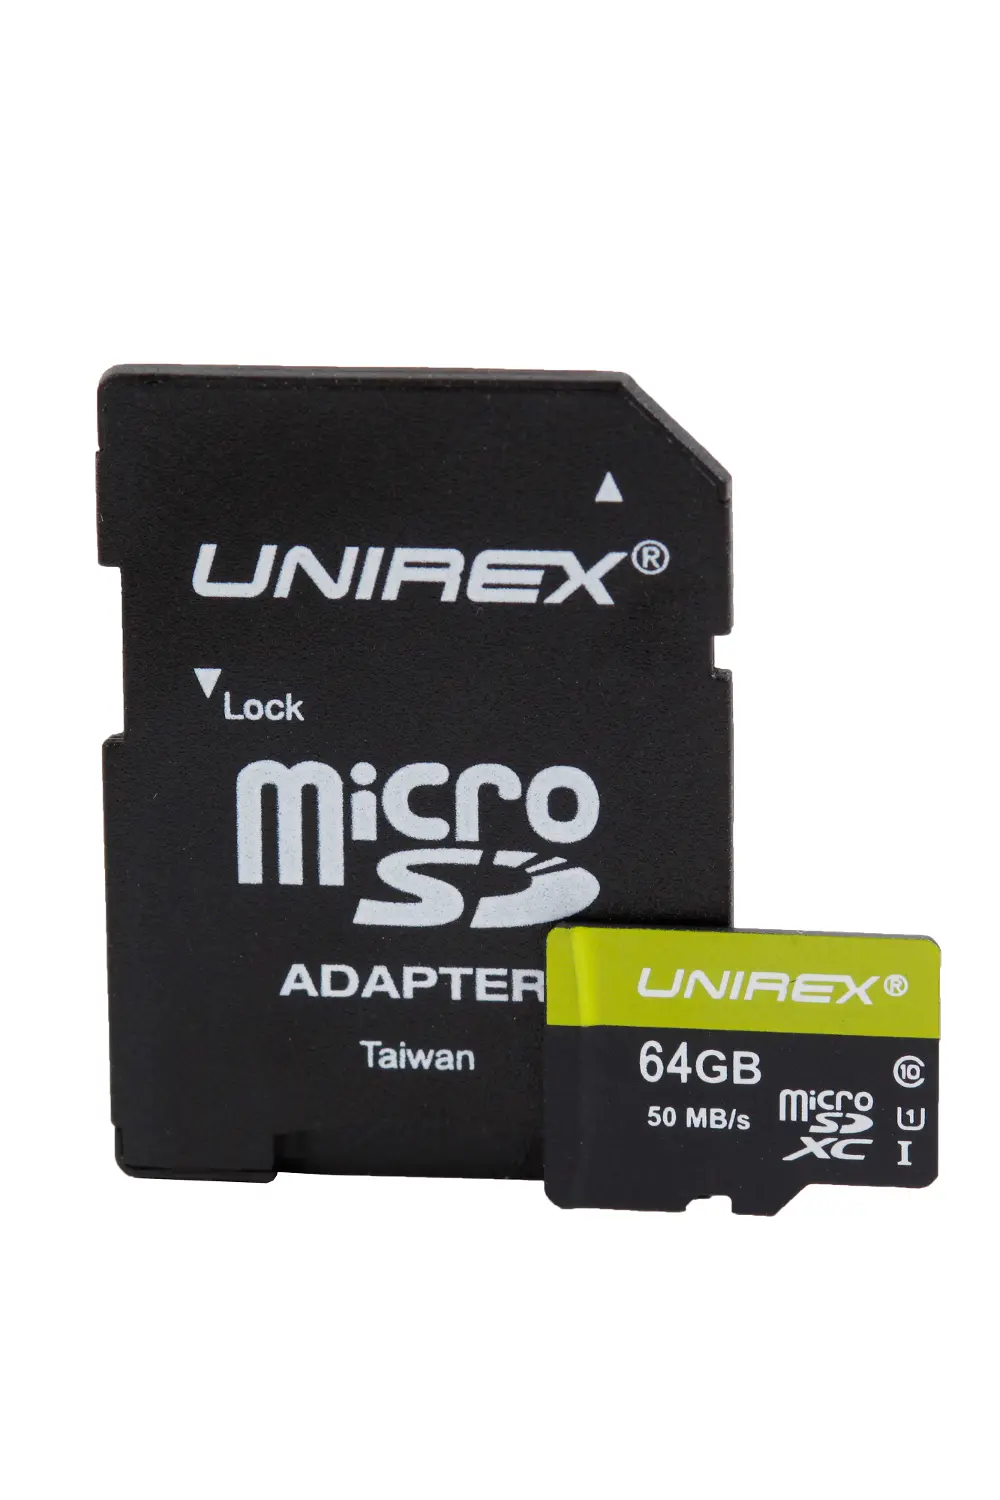 Unirex (UHS-1) Micro SDHC 64GB Memory Card-1